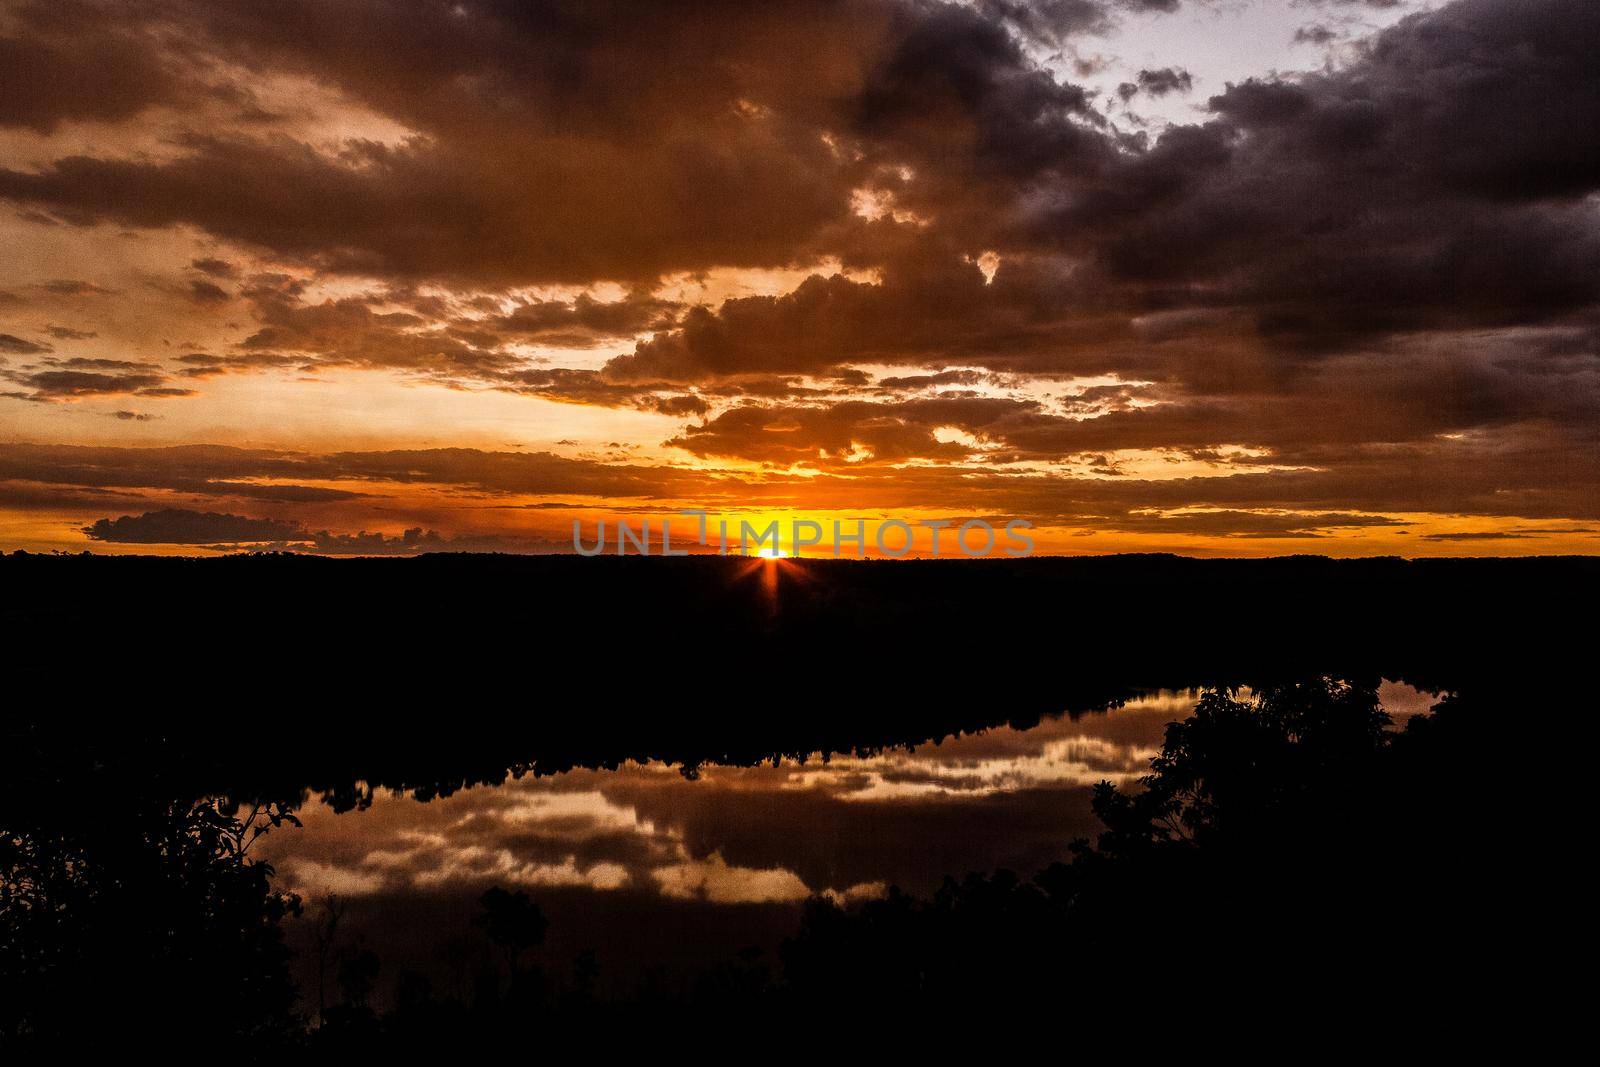 Sonnenuntergang im Outback - Nitmiluk National Park, Australien by bettercallcurry